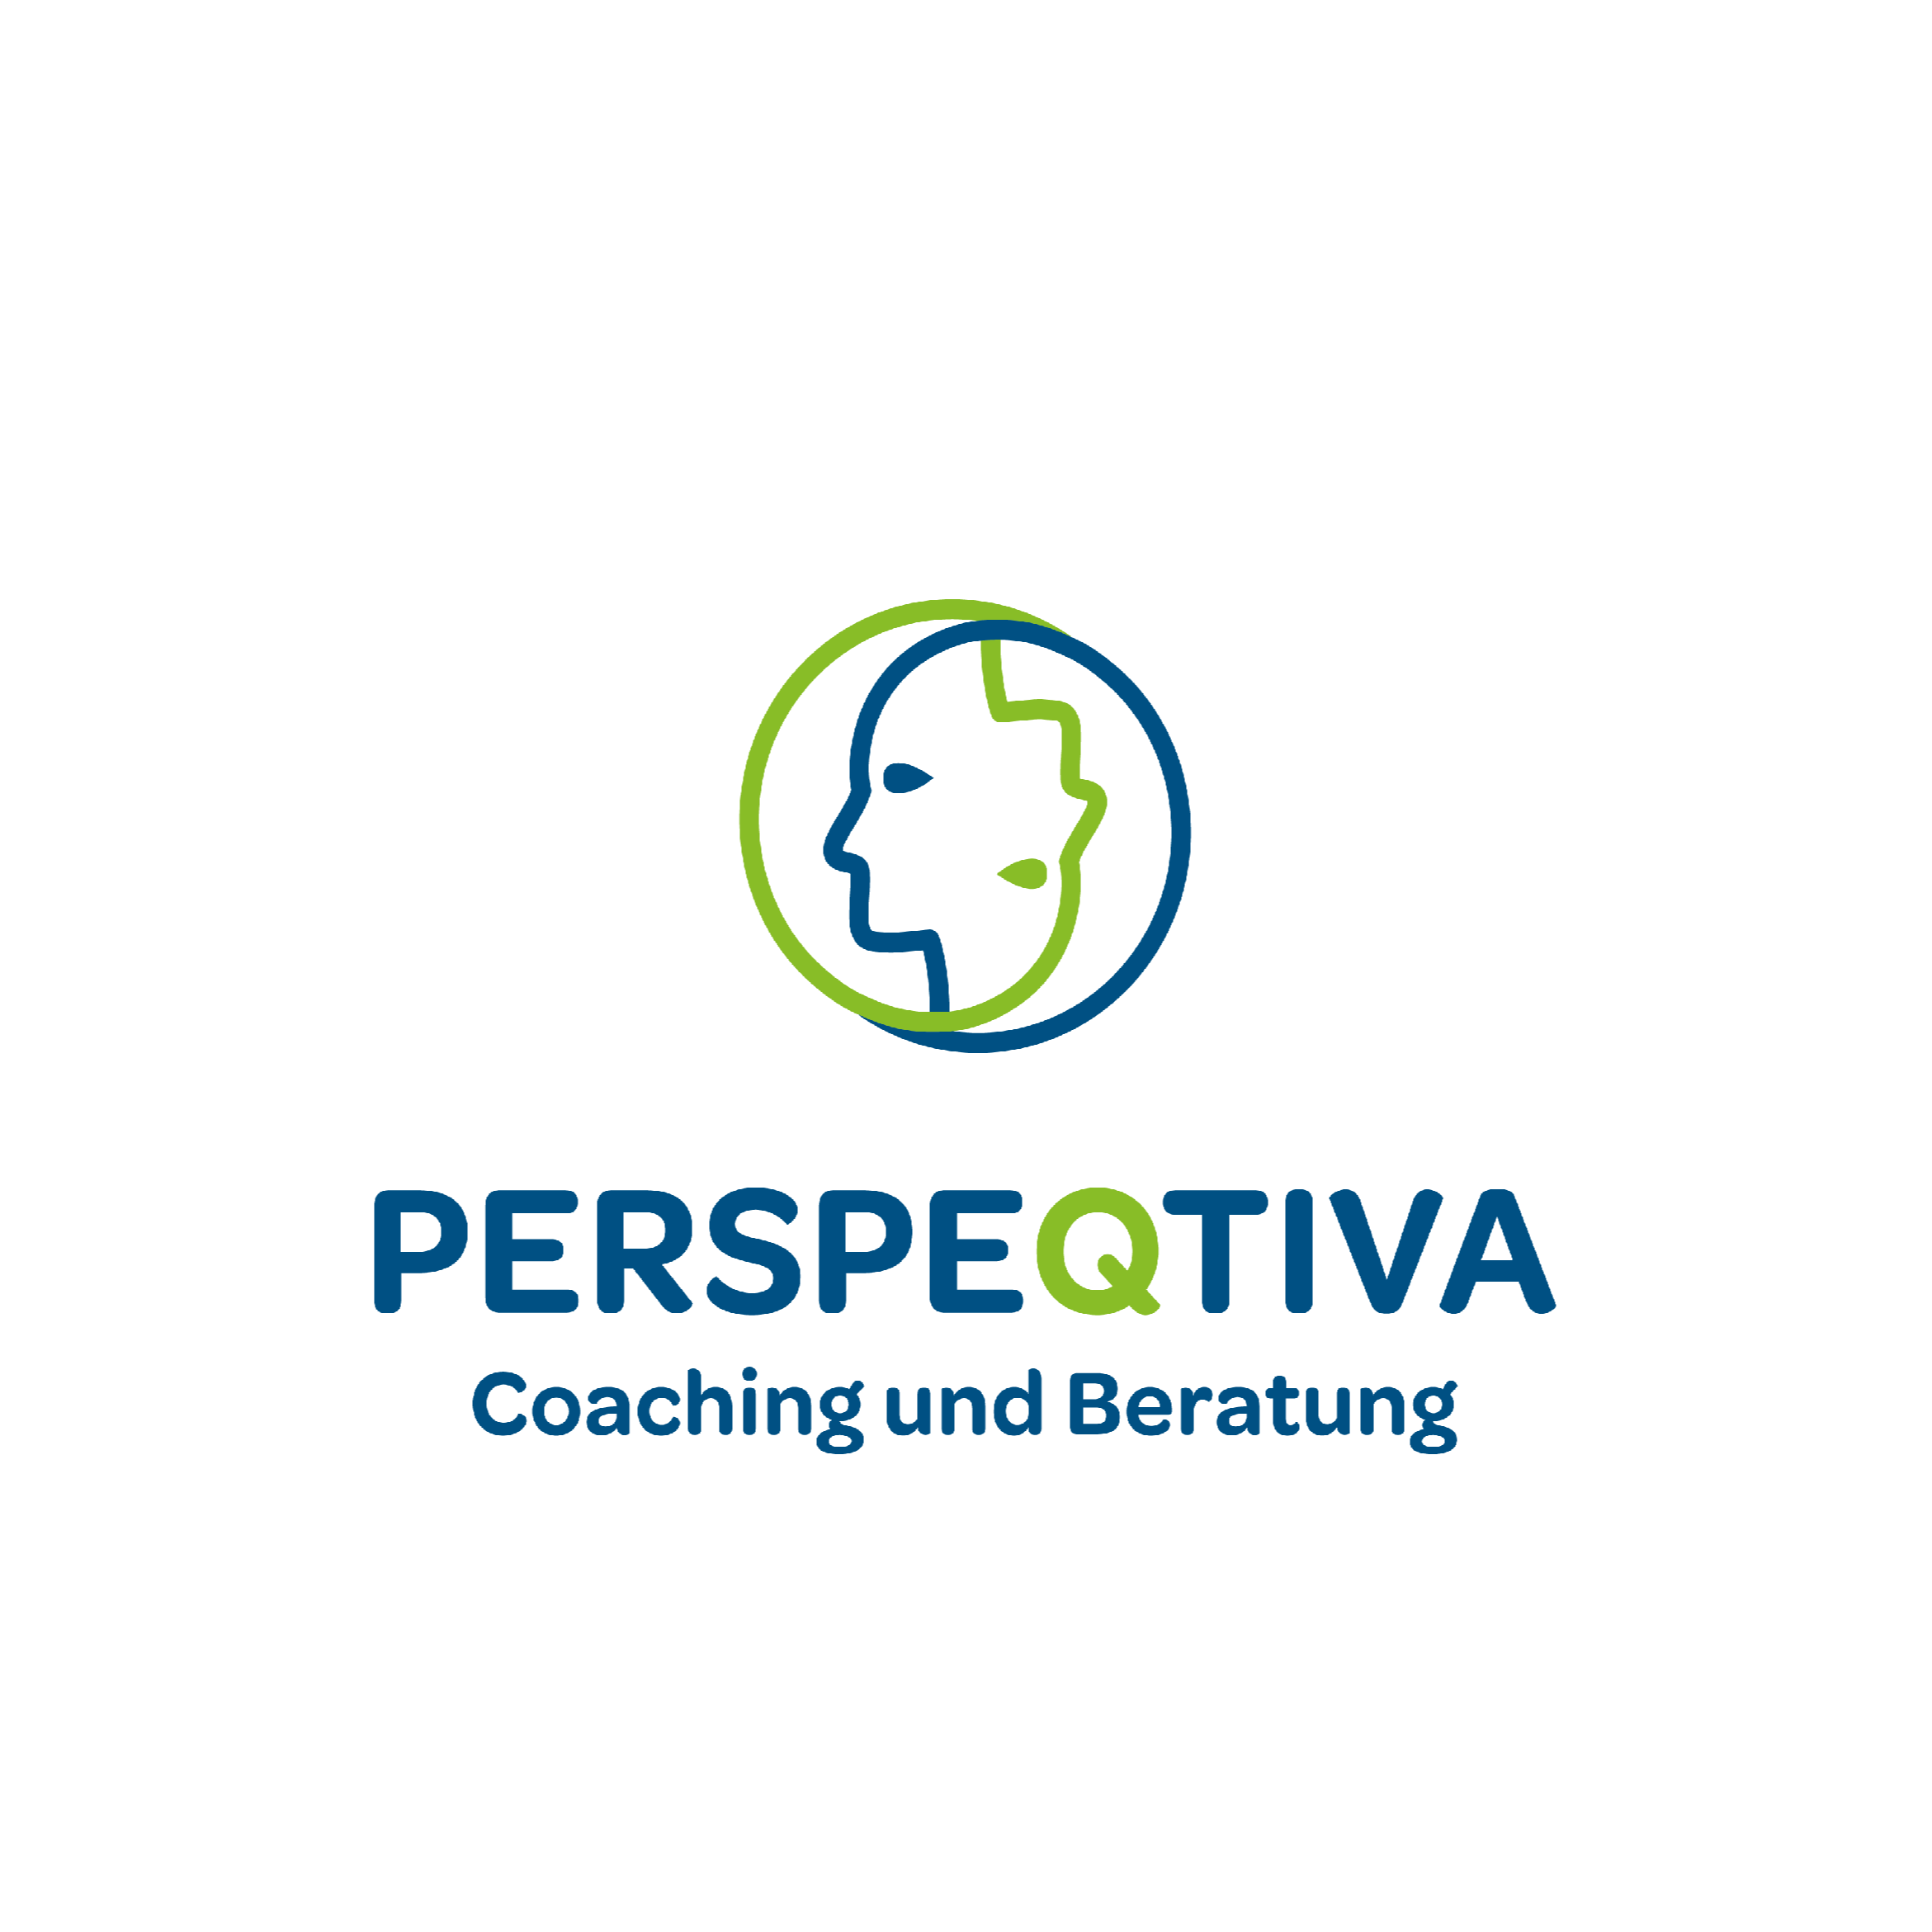 Perspeqtiva - Coaching und Beratung  